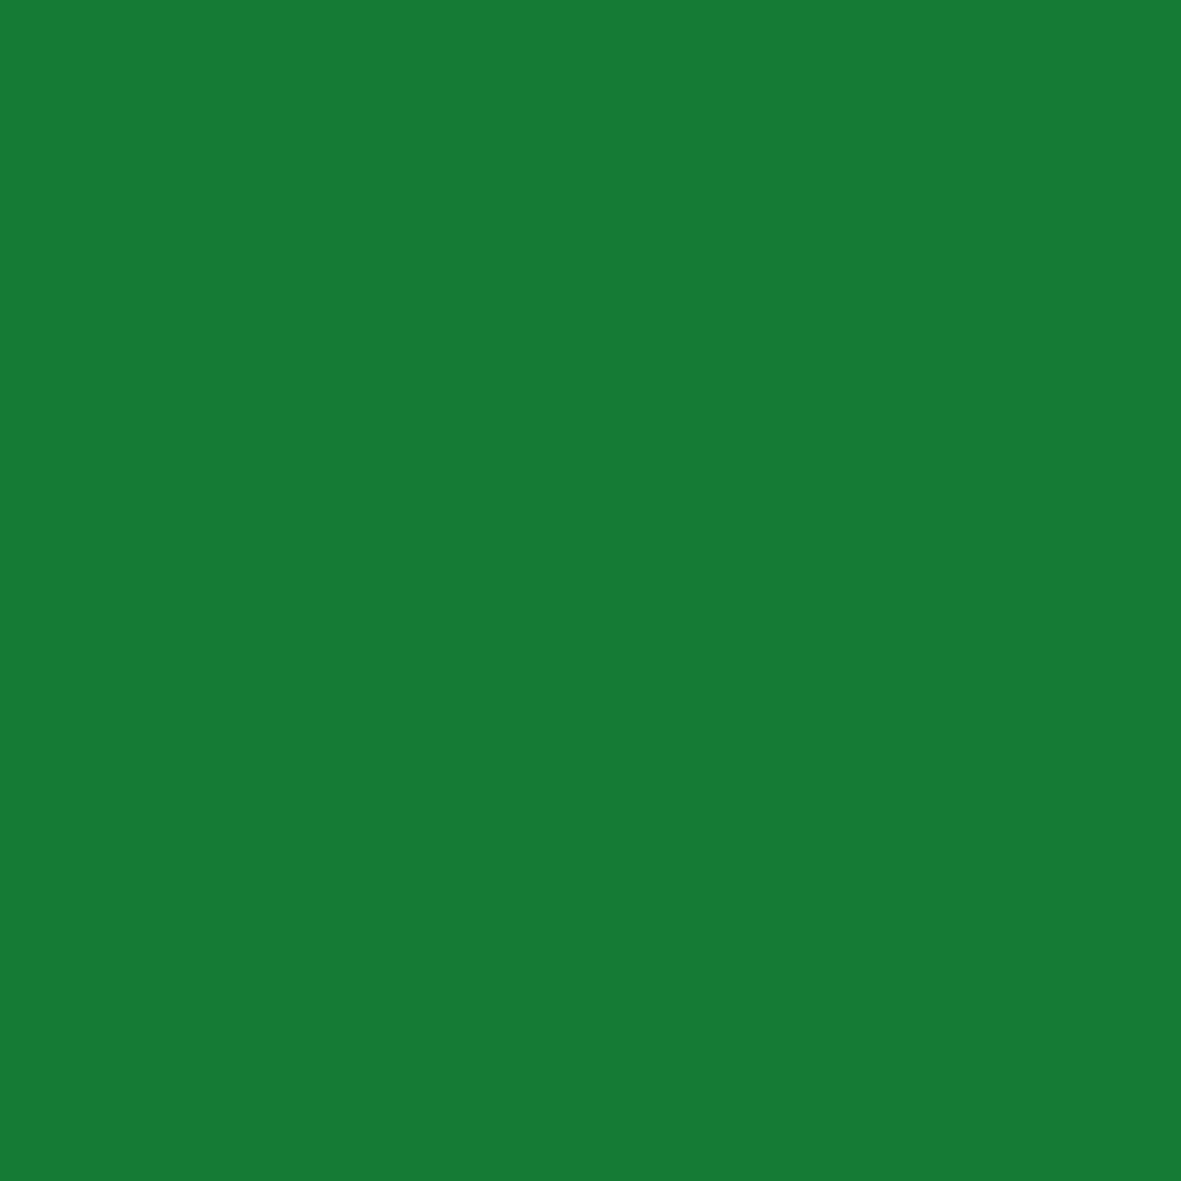 Gravotherm Folienfarbe Türkisgrün für Texte, Logos und Muster 